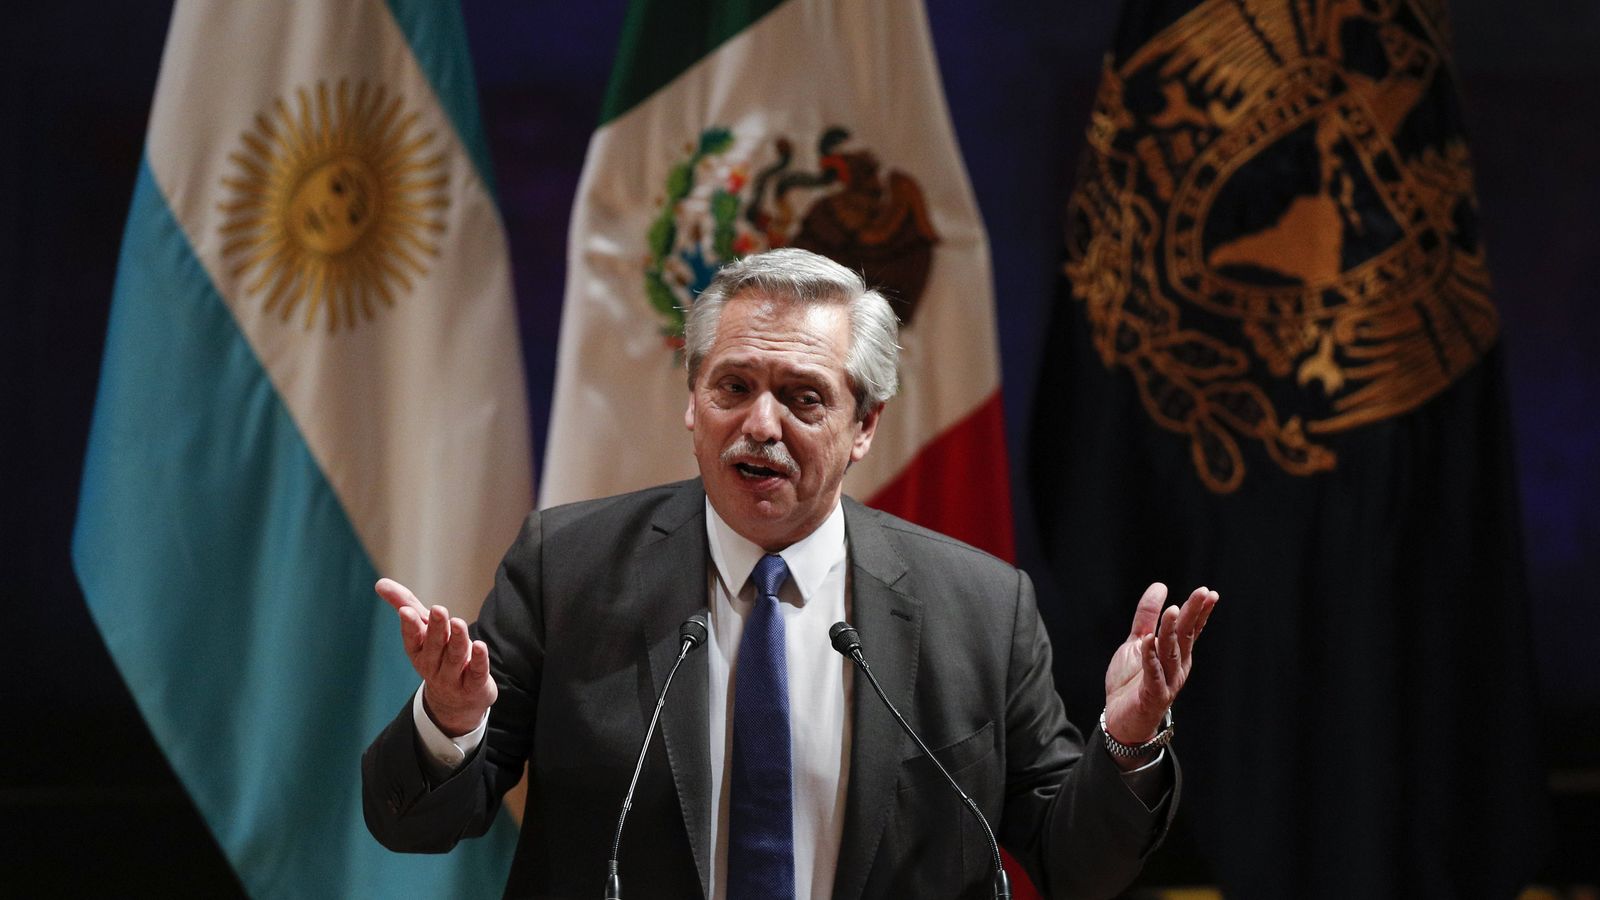 Le président argentin Alberto Fernandez lors d'un discours à l'Université Nationale Autonome de San Ildefonso, Mexico City, le 5 novembre 2019.